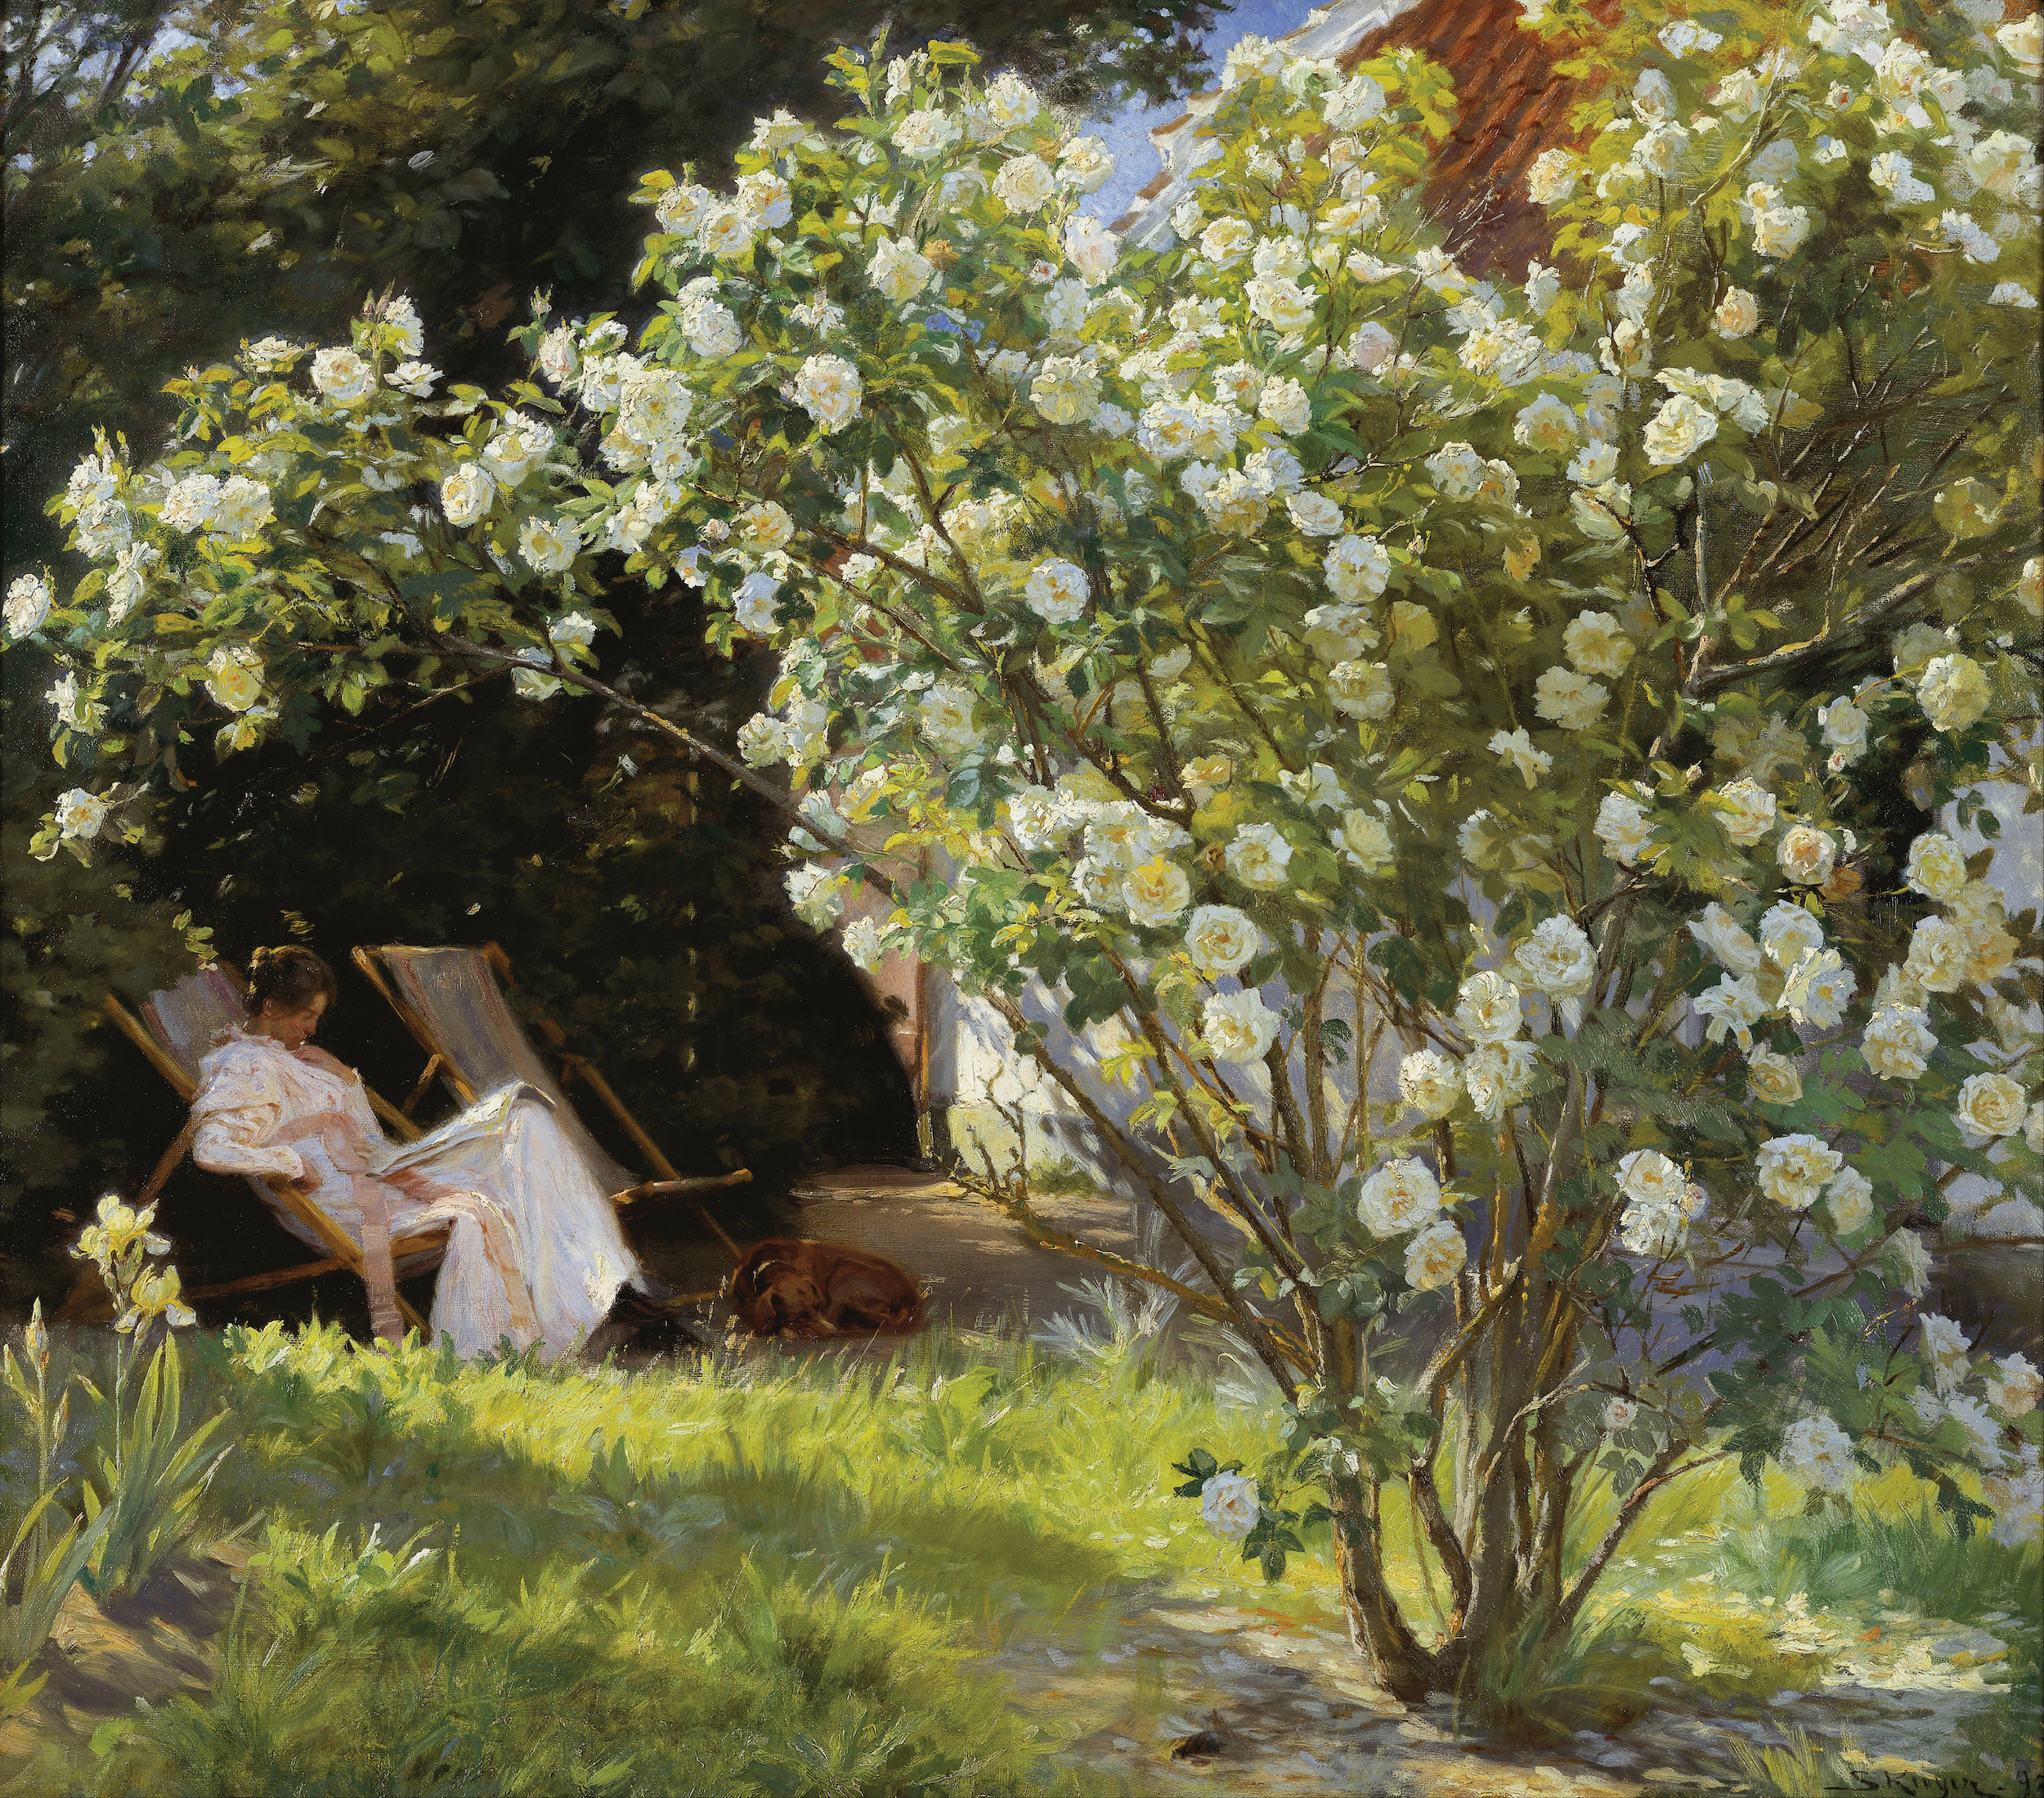 玫瑰，瑪麗·柯羅耶坐在本德森夫人宅邸邊花園裏德躺椅上  by P.S. Krøyer - 1893 - 76.5 x 67.5 cm 